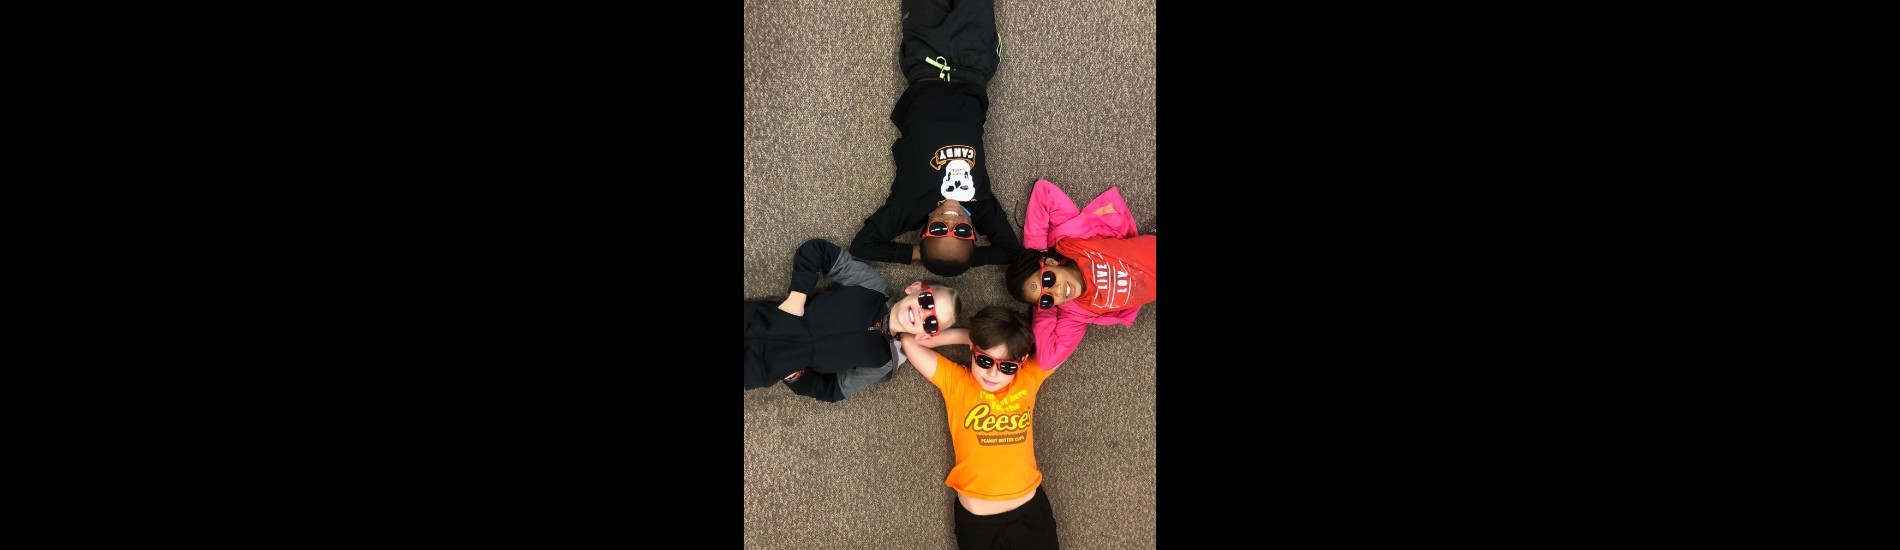 Katherine Thomas Elementary students wearing sunglasses